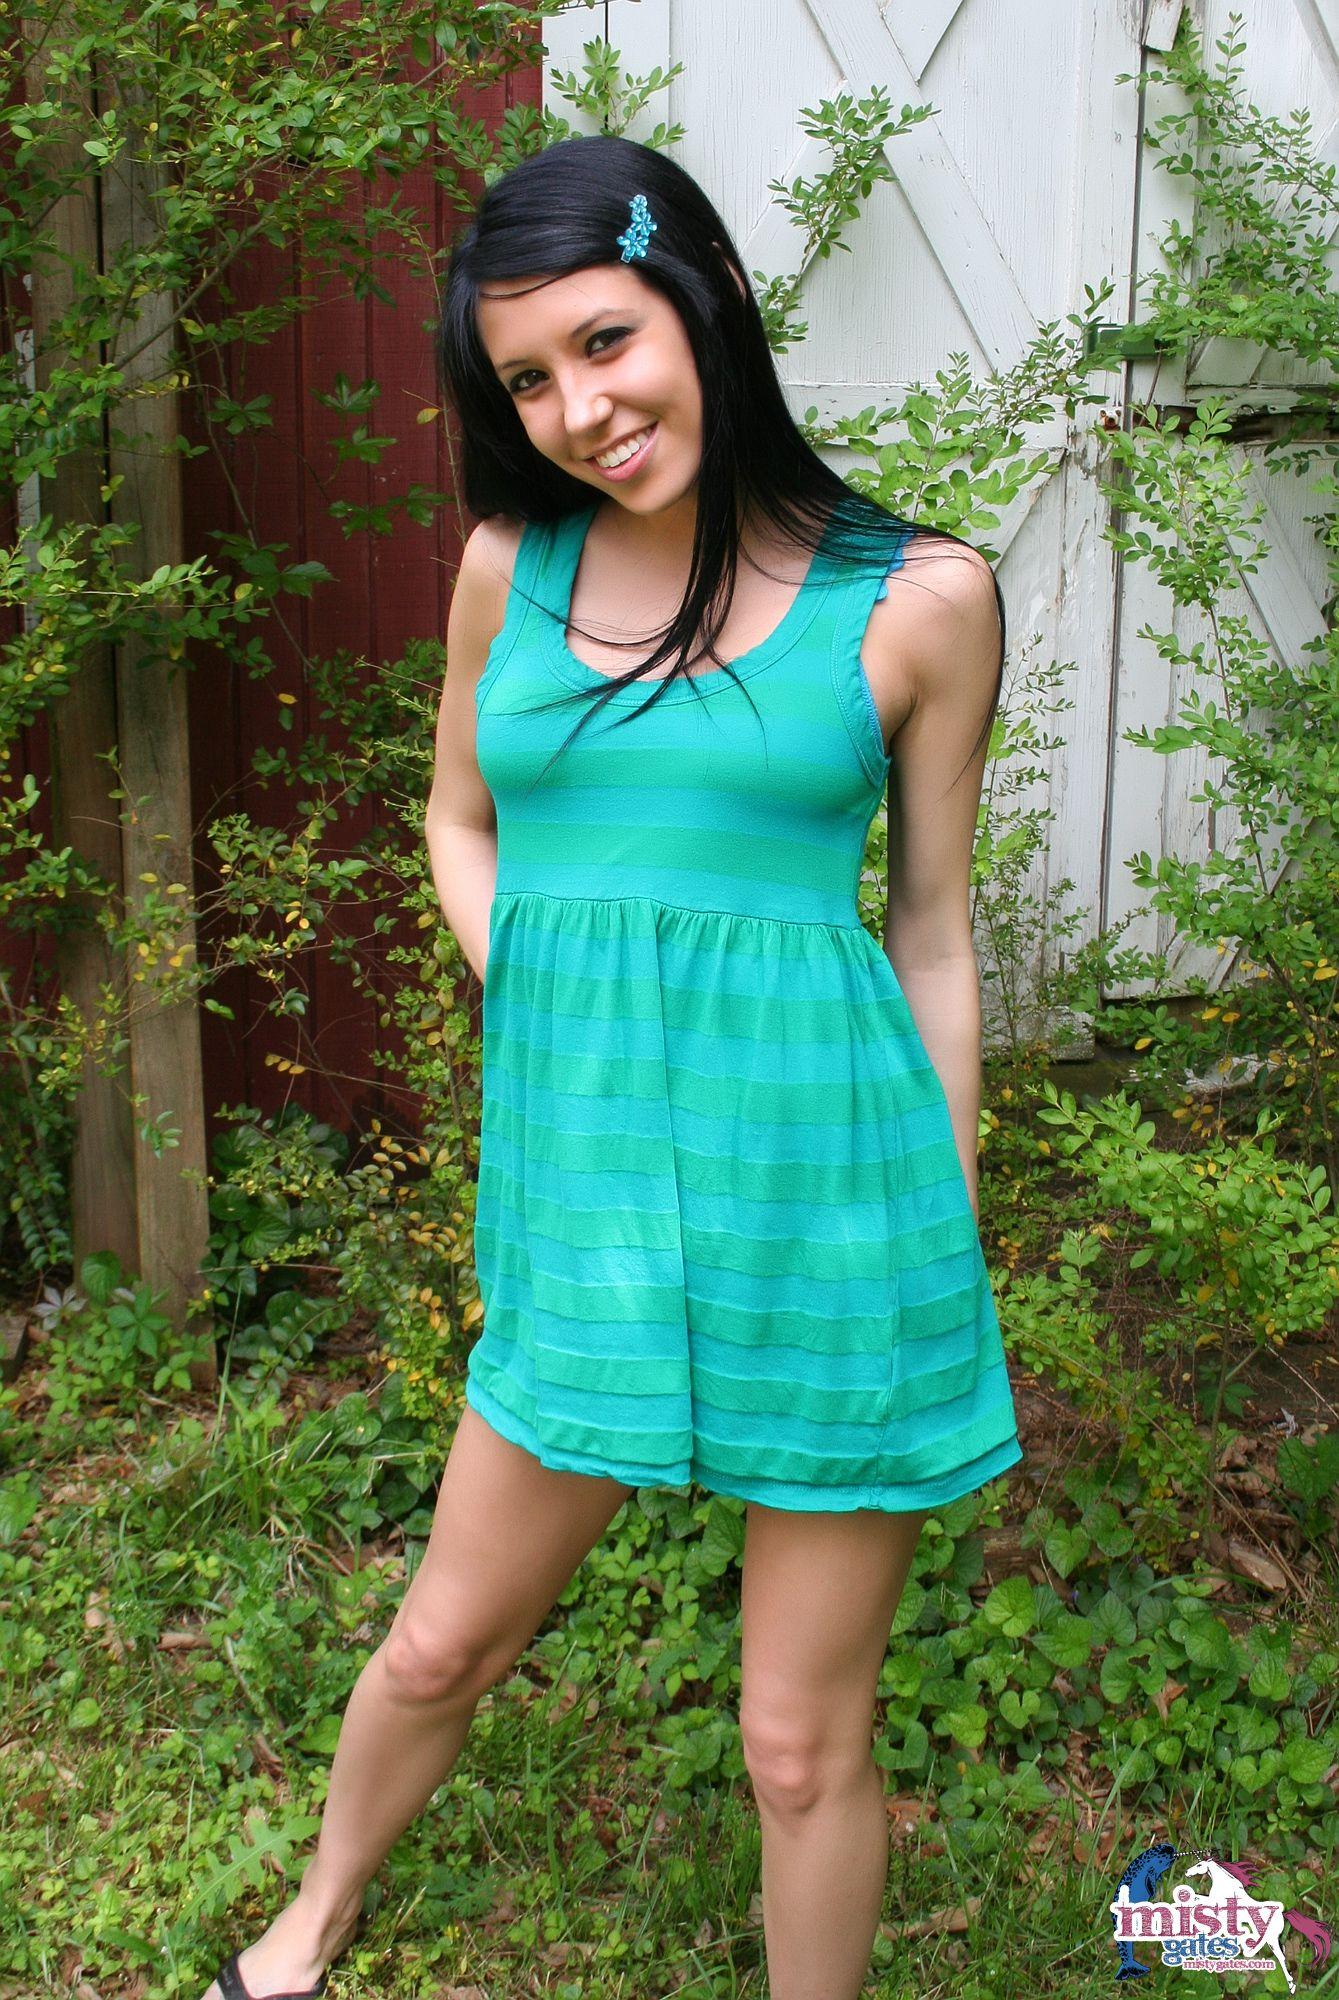 Bilder von Teenie-Mädchen Misty Gates, die sich im Hinterhof ausziehen
 #59592578